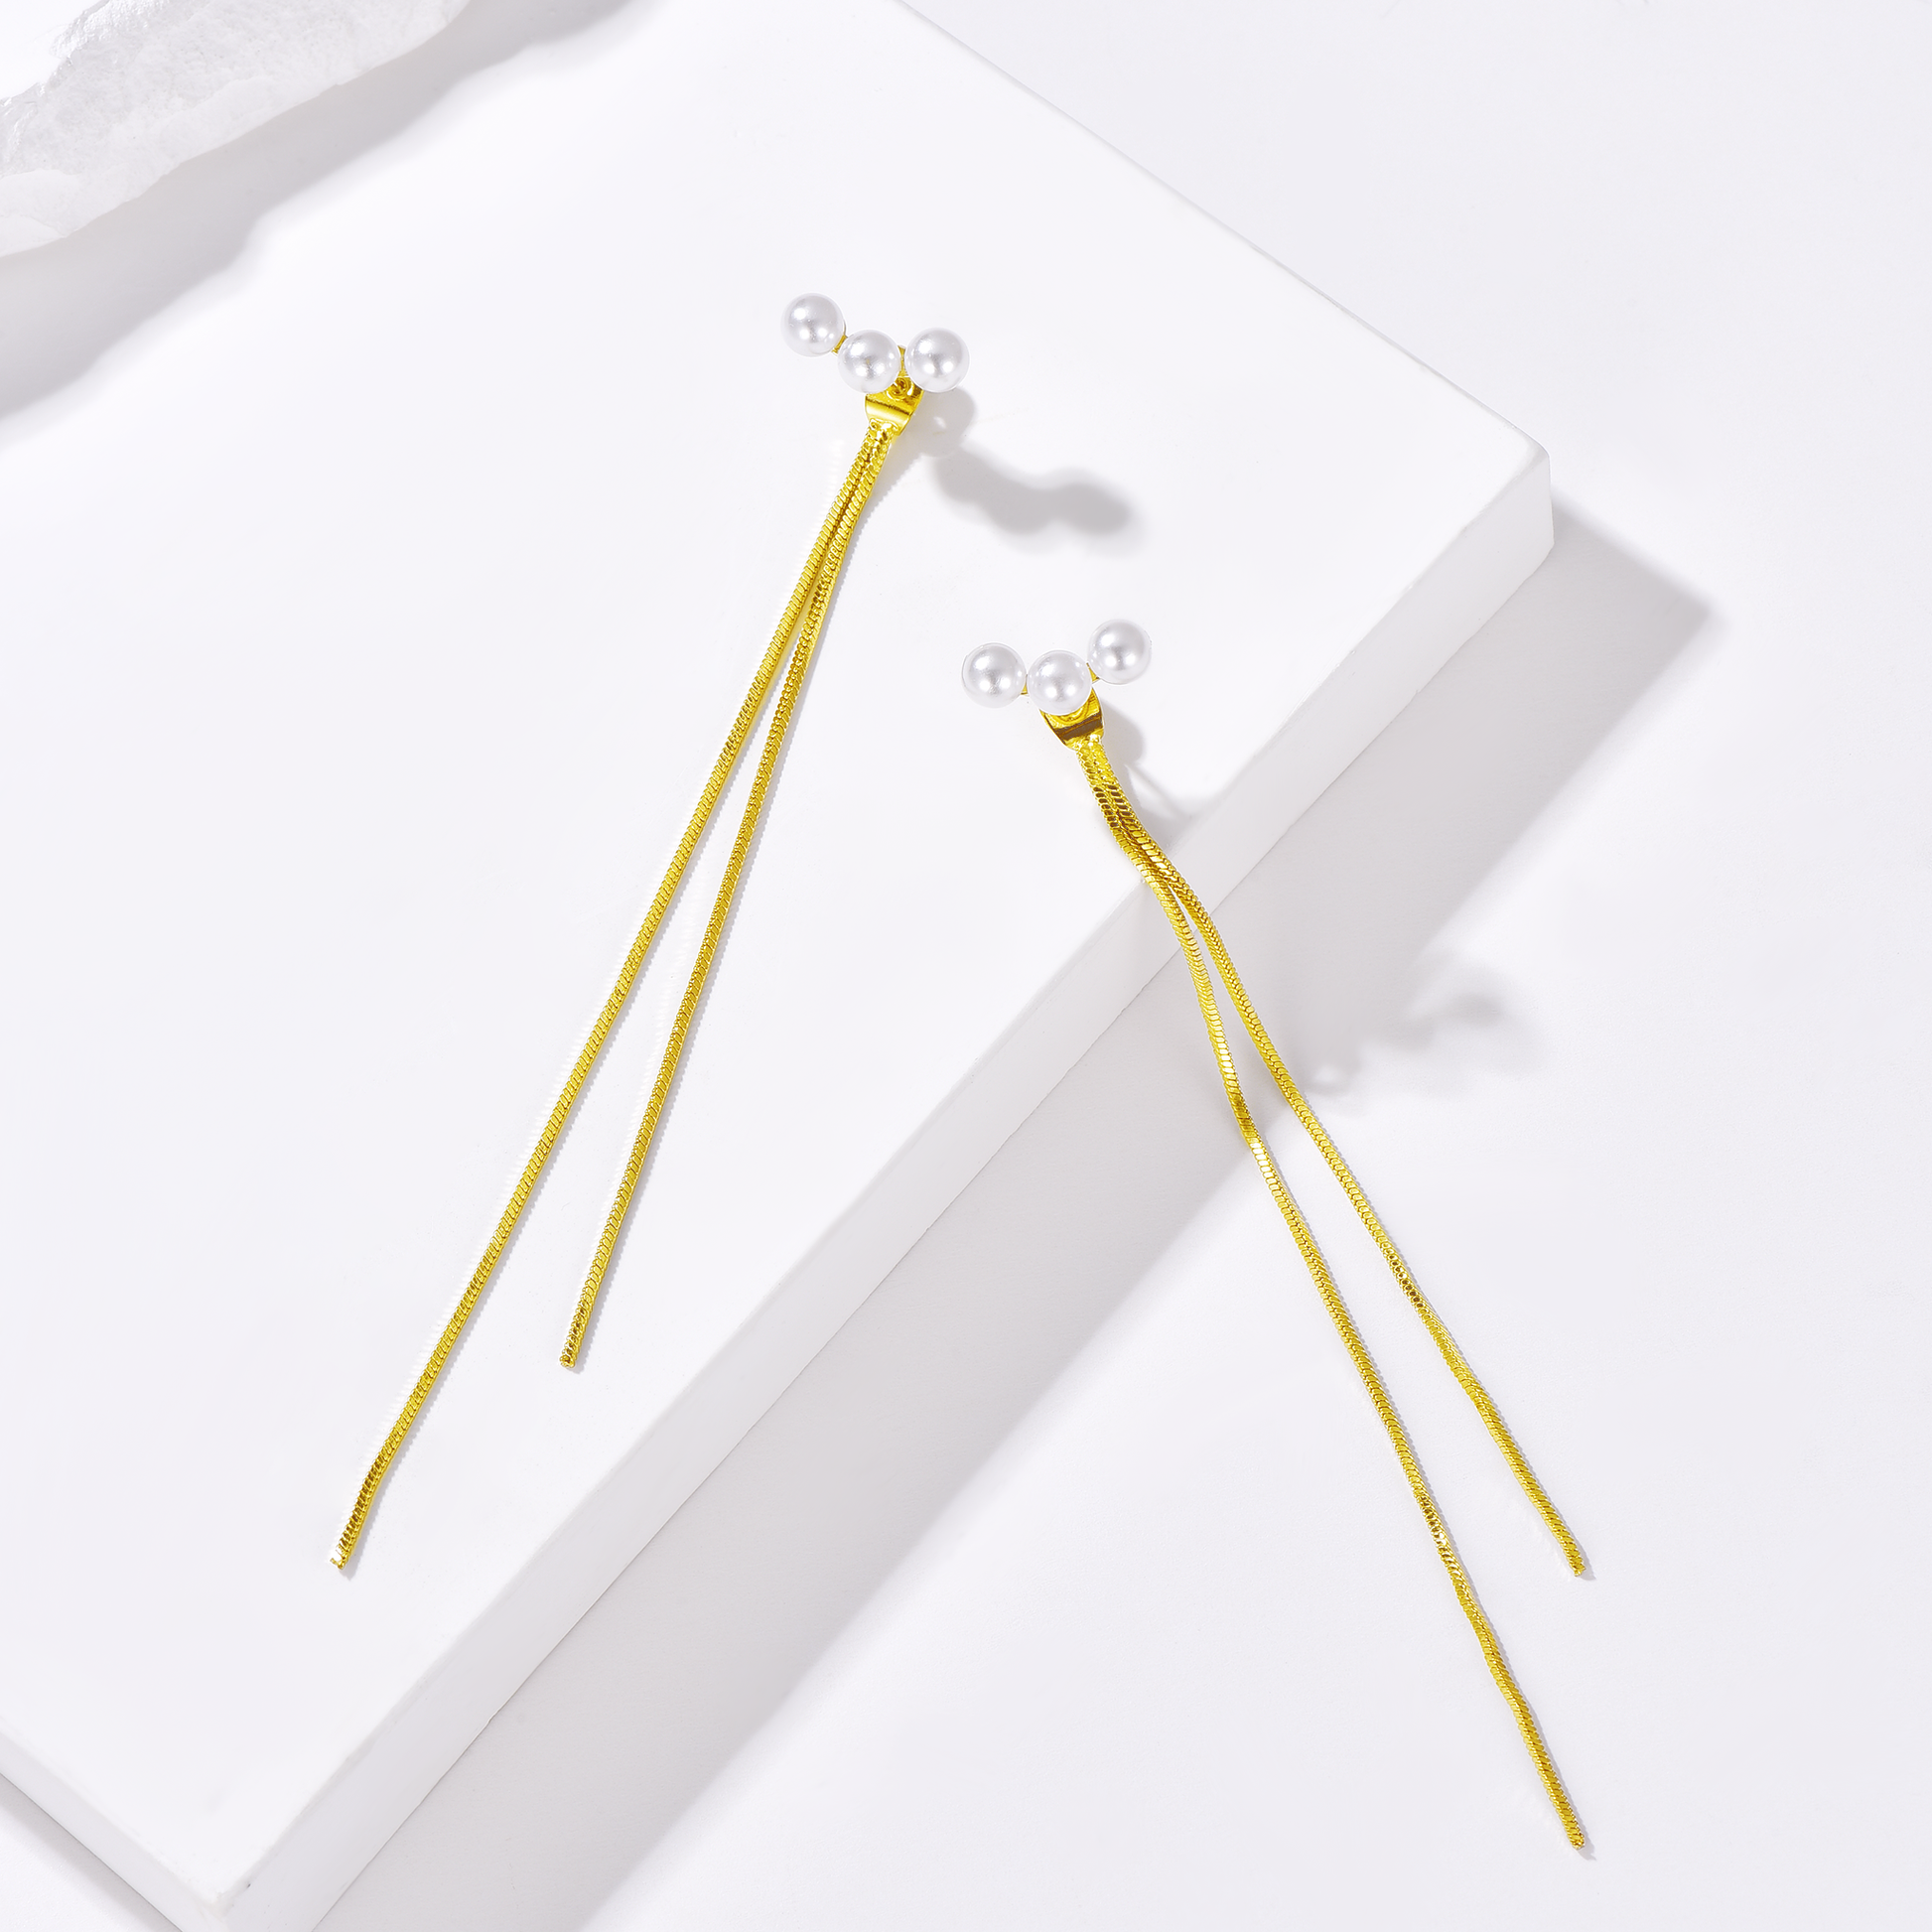 Pearl Tassel Drop Earrings - 14K Gold Plated - Earrings - ONNNIII